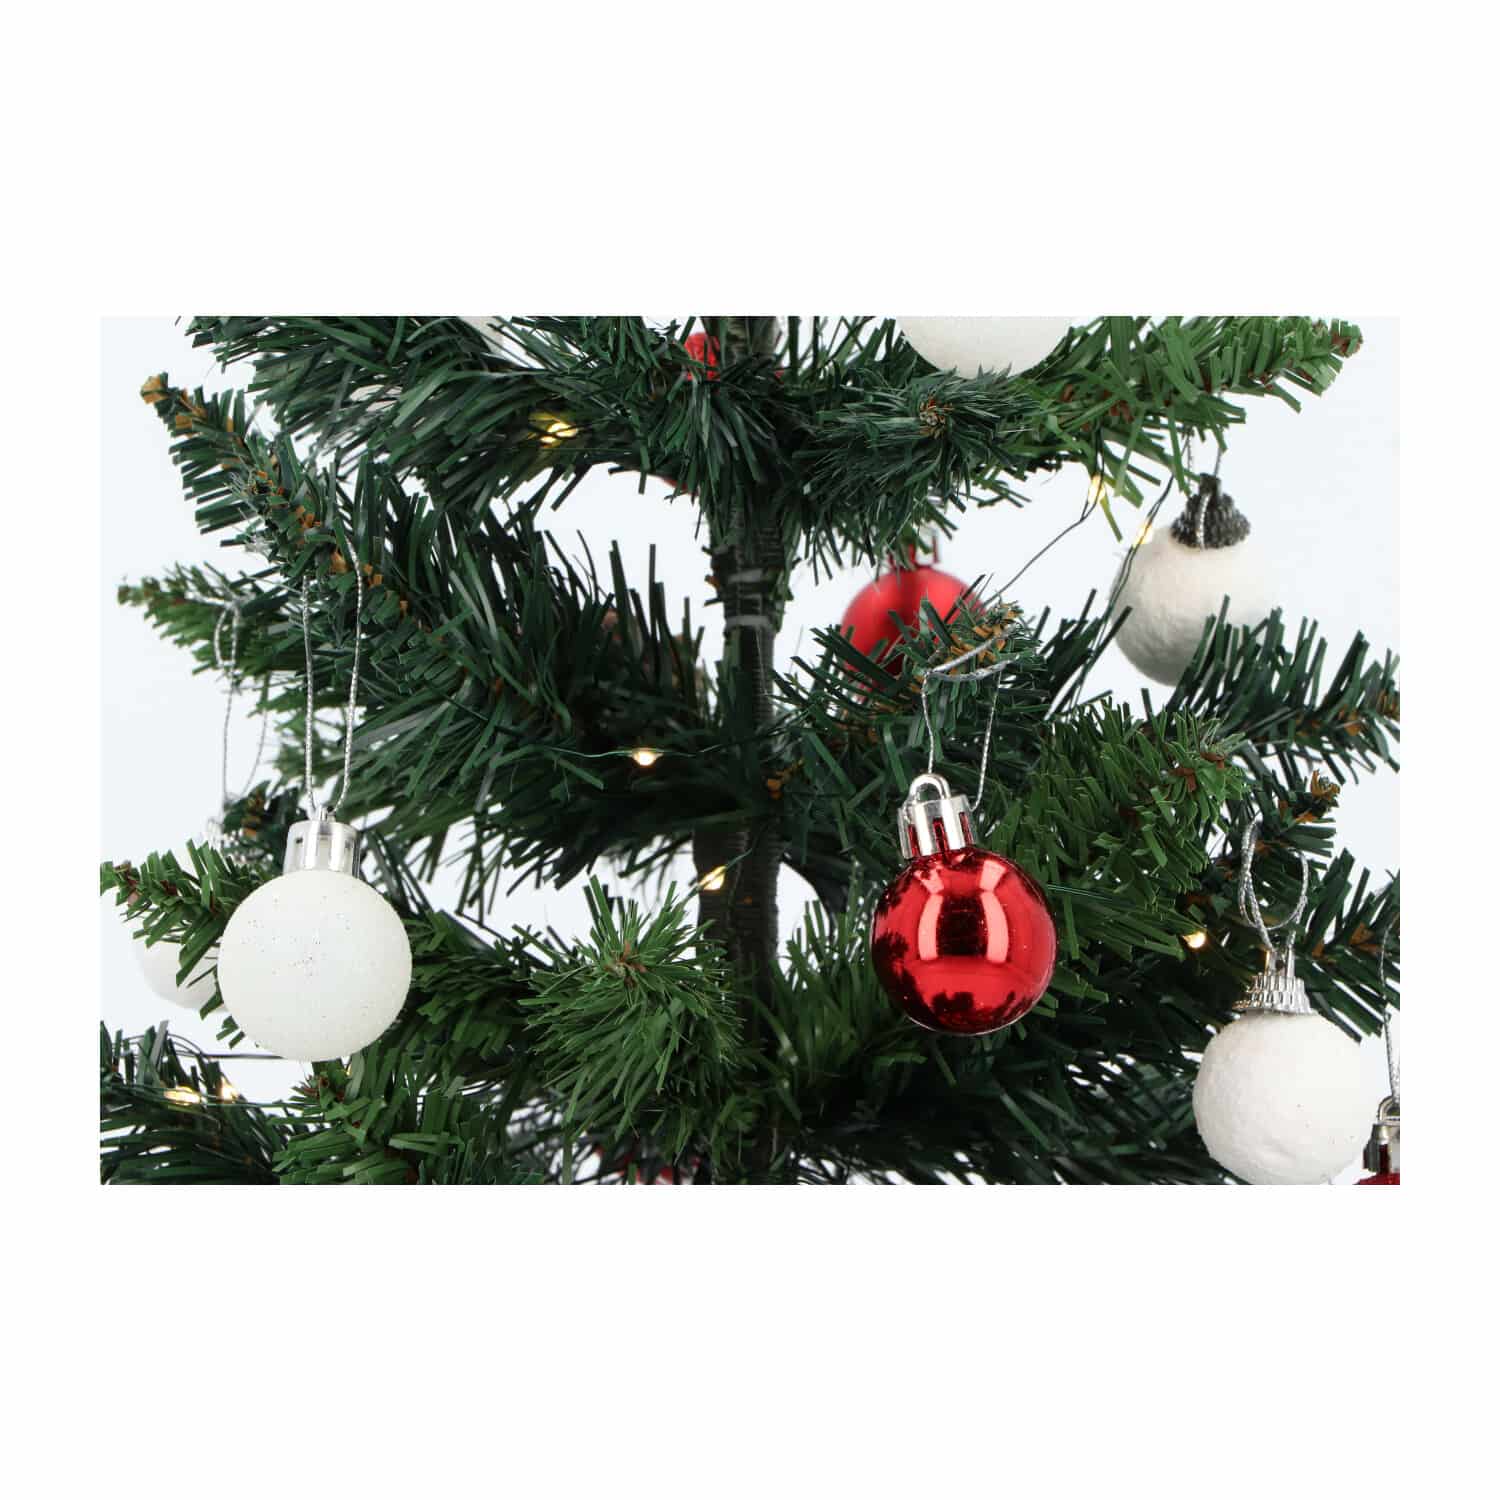 4goodz kunstkerstboom met licht en versiering 50cm hoog - Rood/Wit